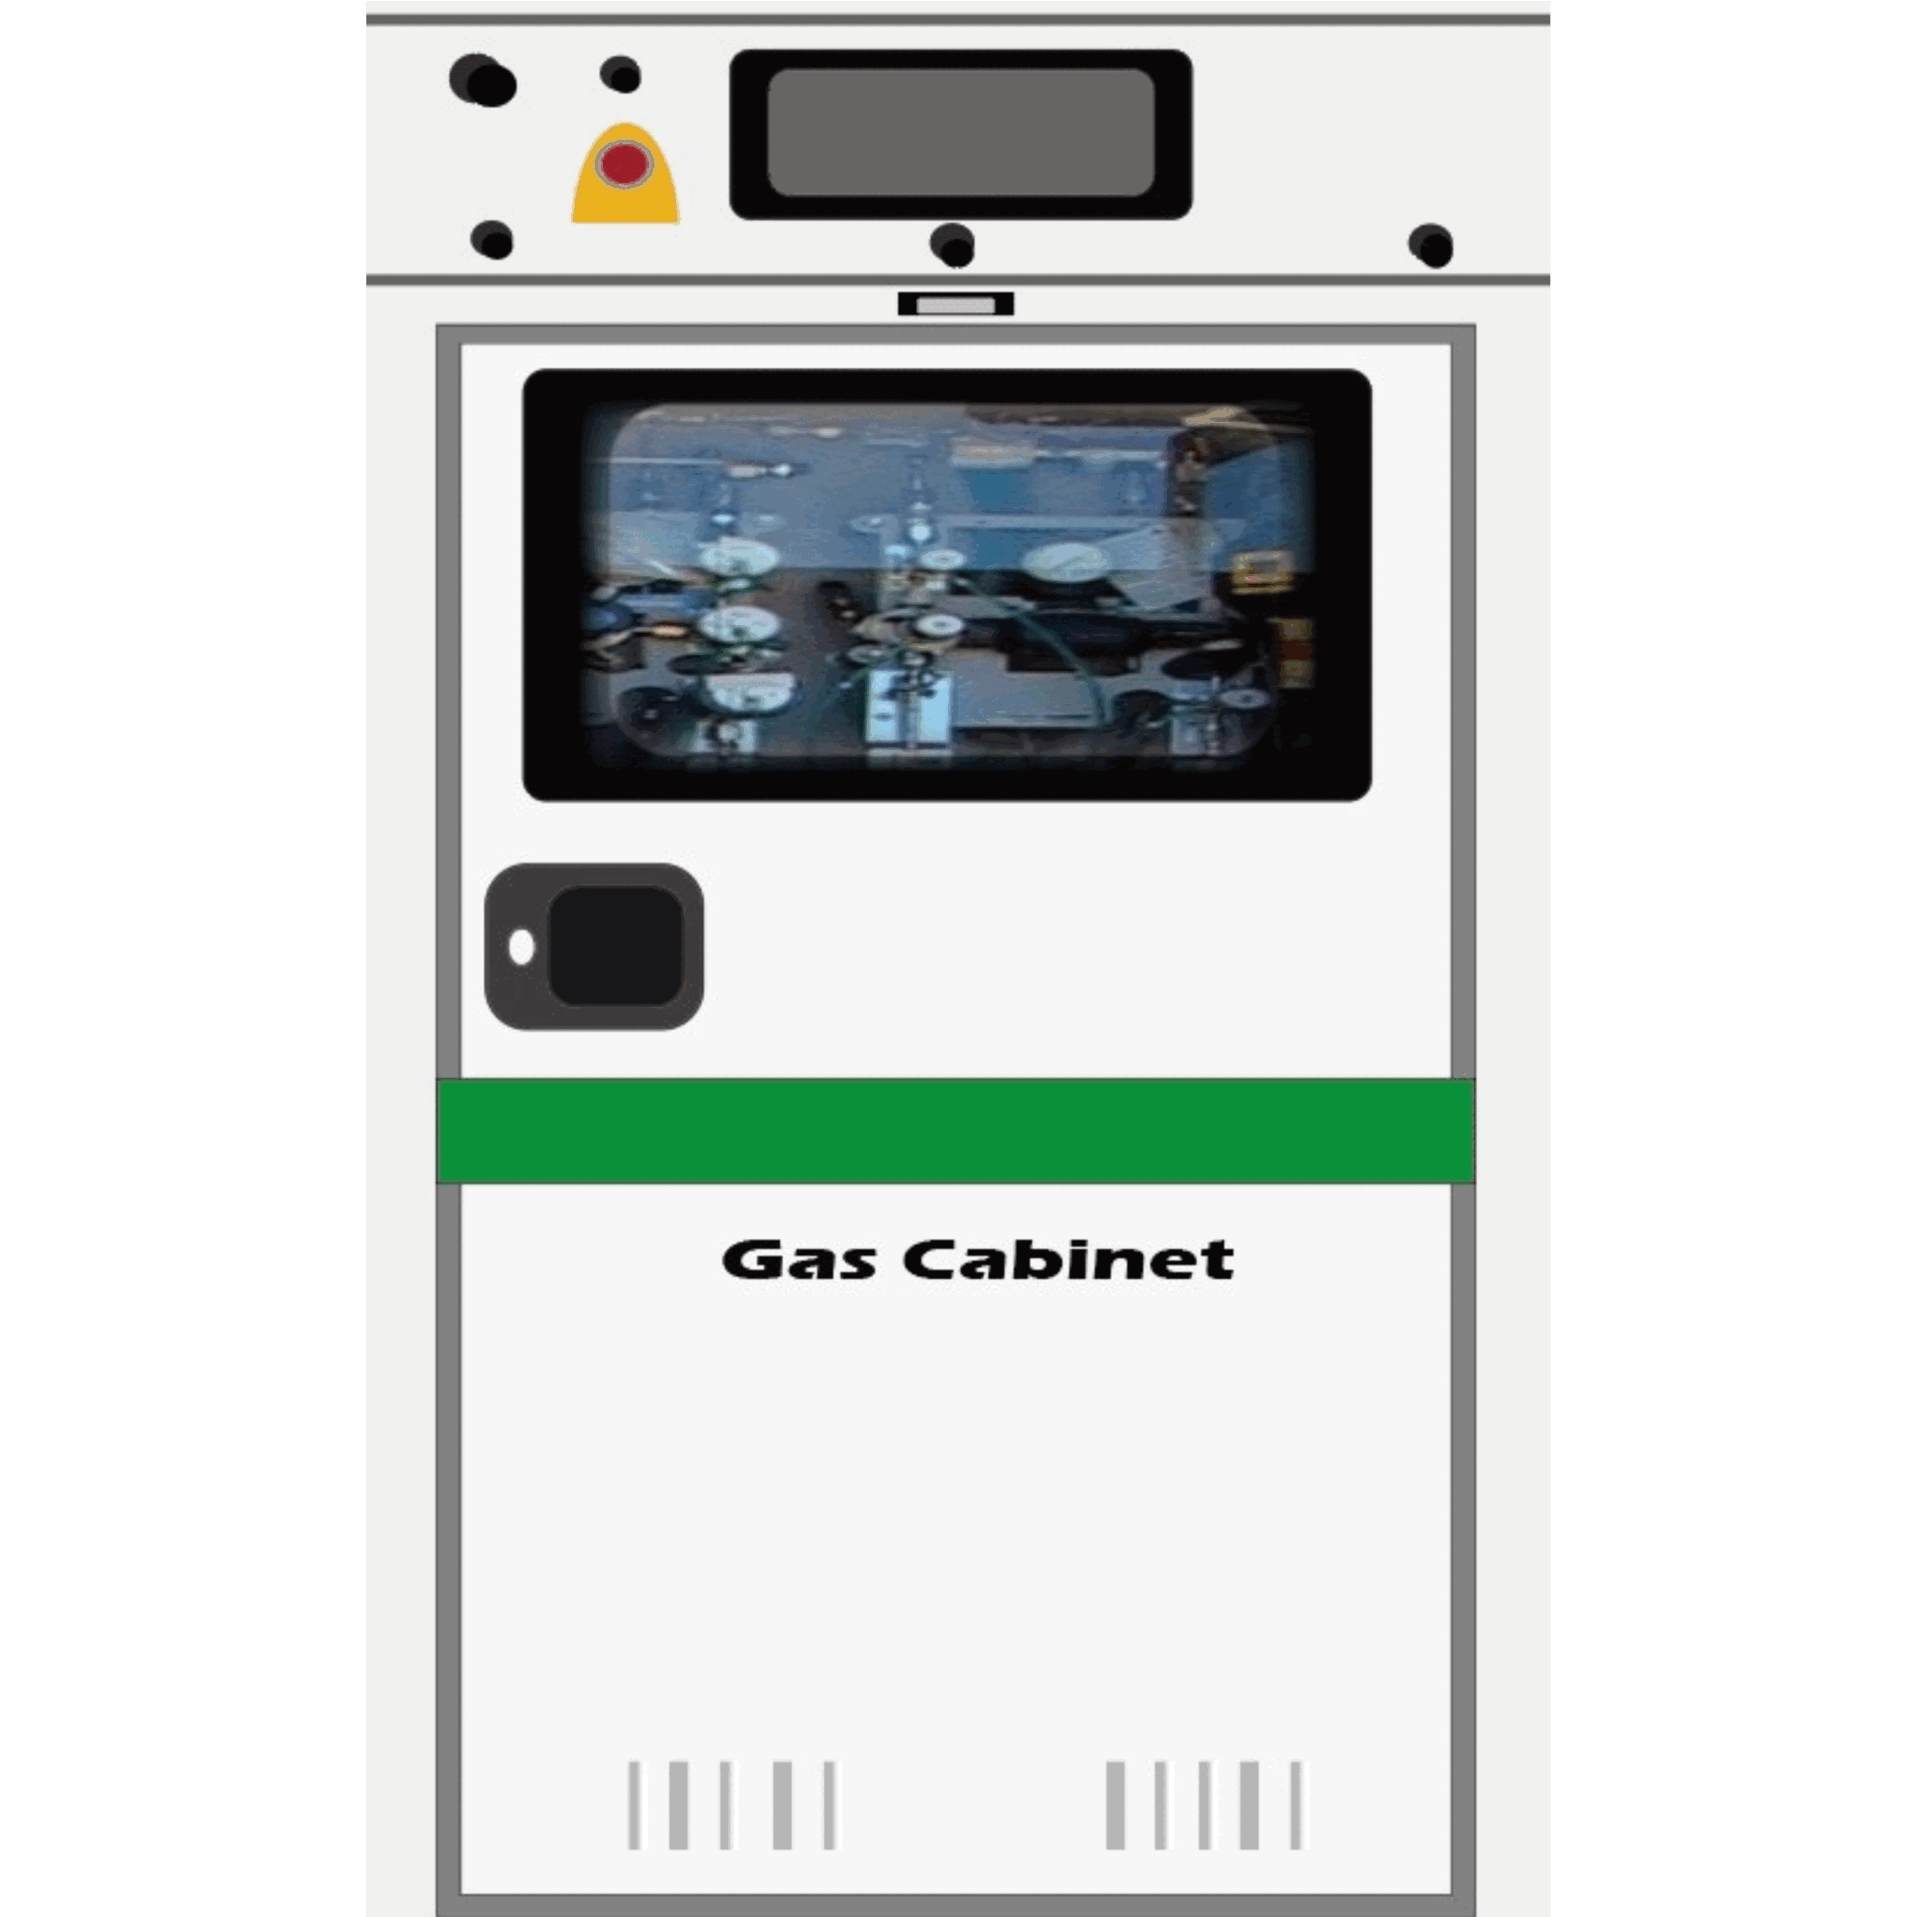 सेमीकंडक्टर और चार्जिंग स्टेशन के कैबिनेट के लिए गैस कैबिनेट का समाधान